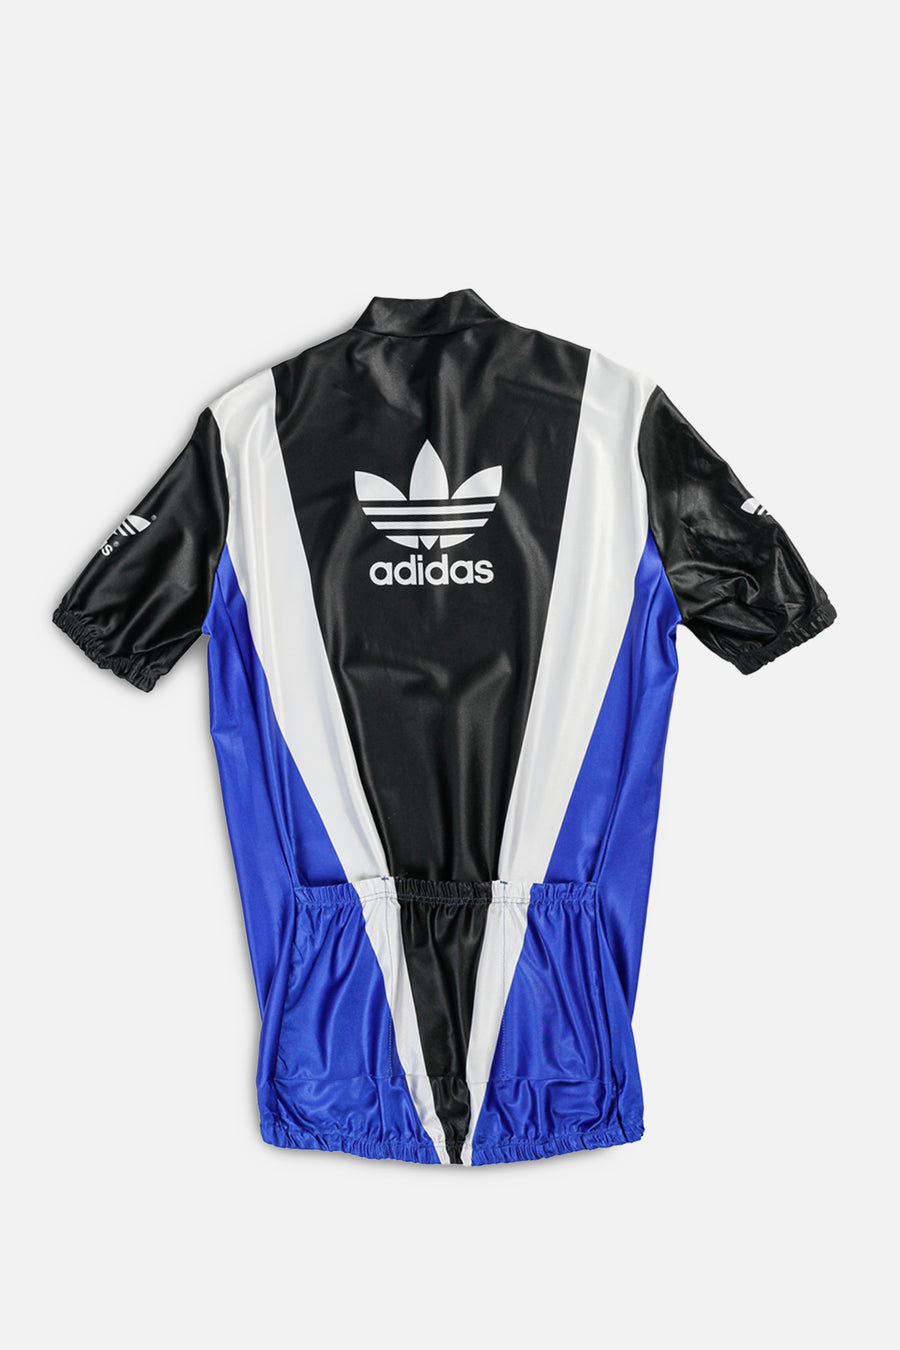 Adidas Cycling Jersey - L